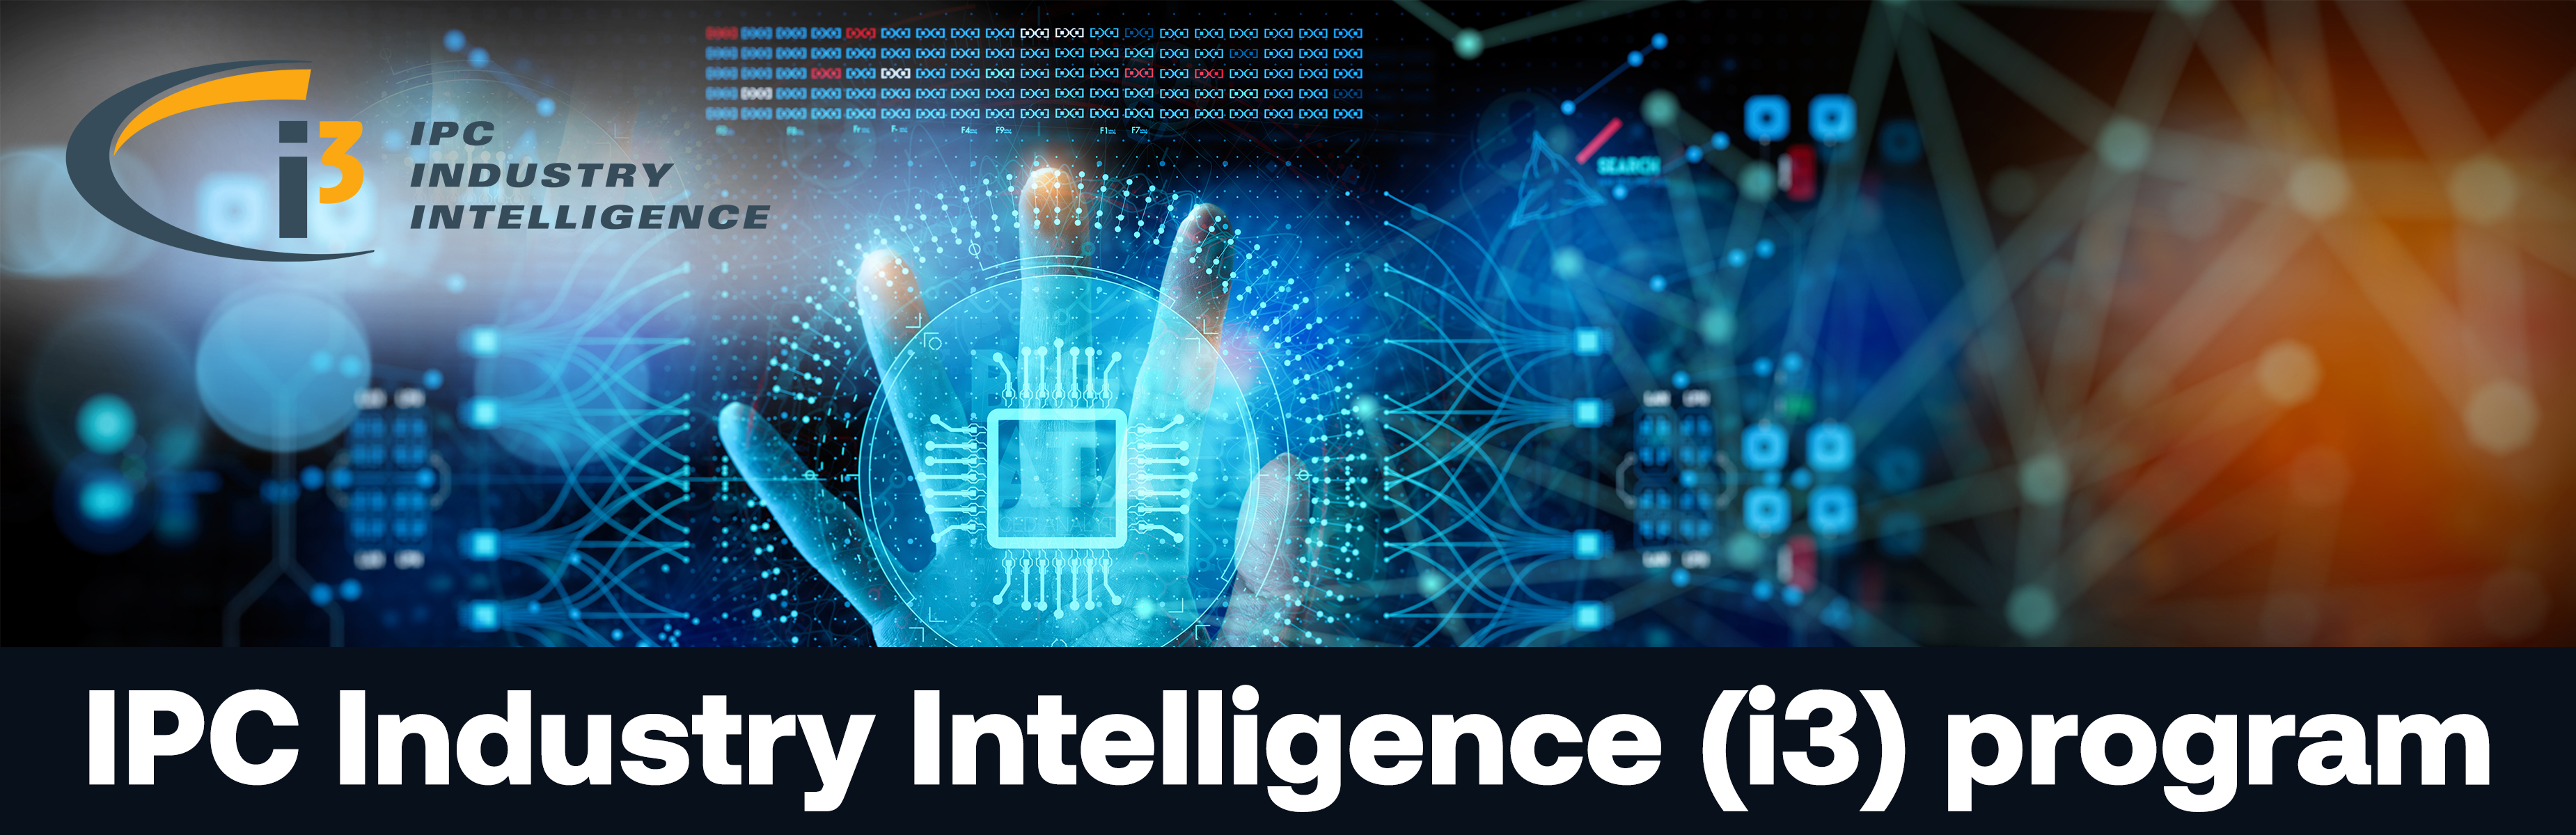 IPC industry intelligence program header/logo